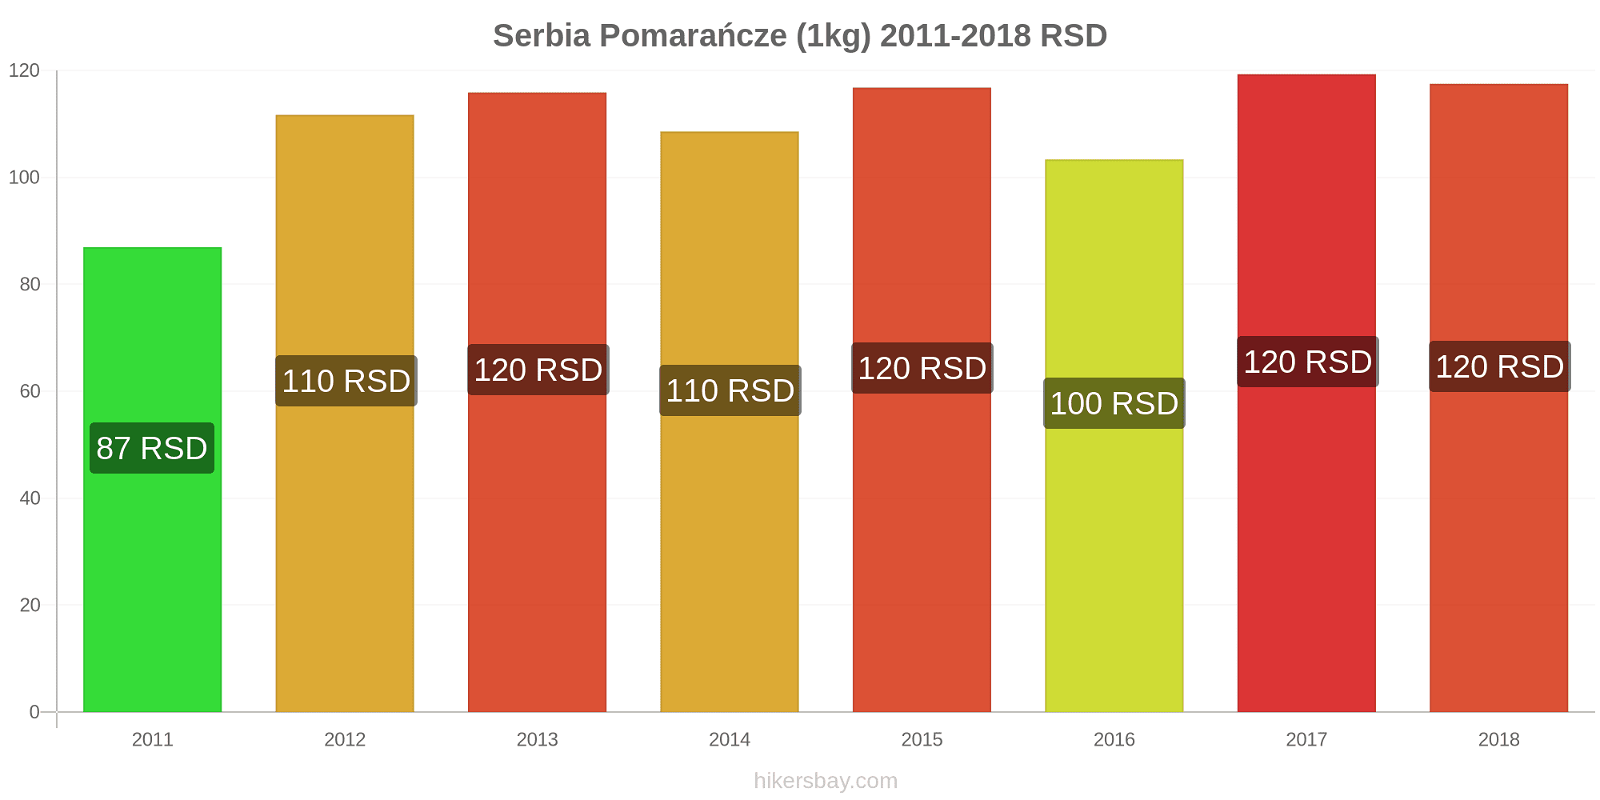 Serbia zmiany cen Pomarańcze (1kg) hikersbay.com